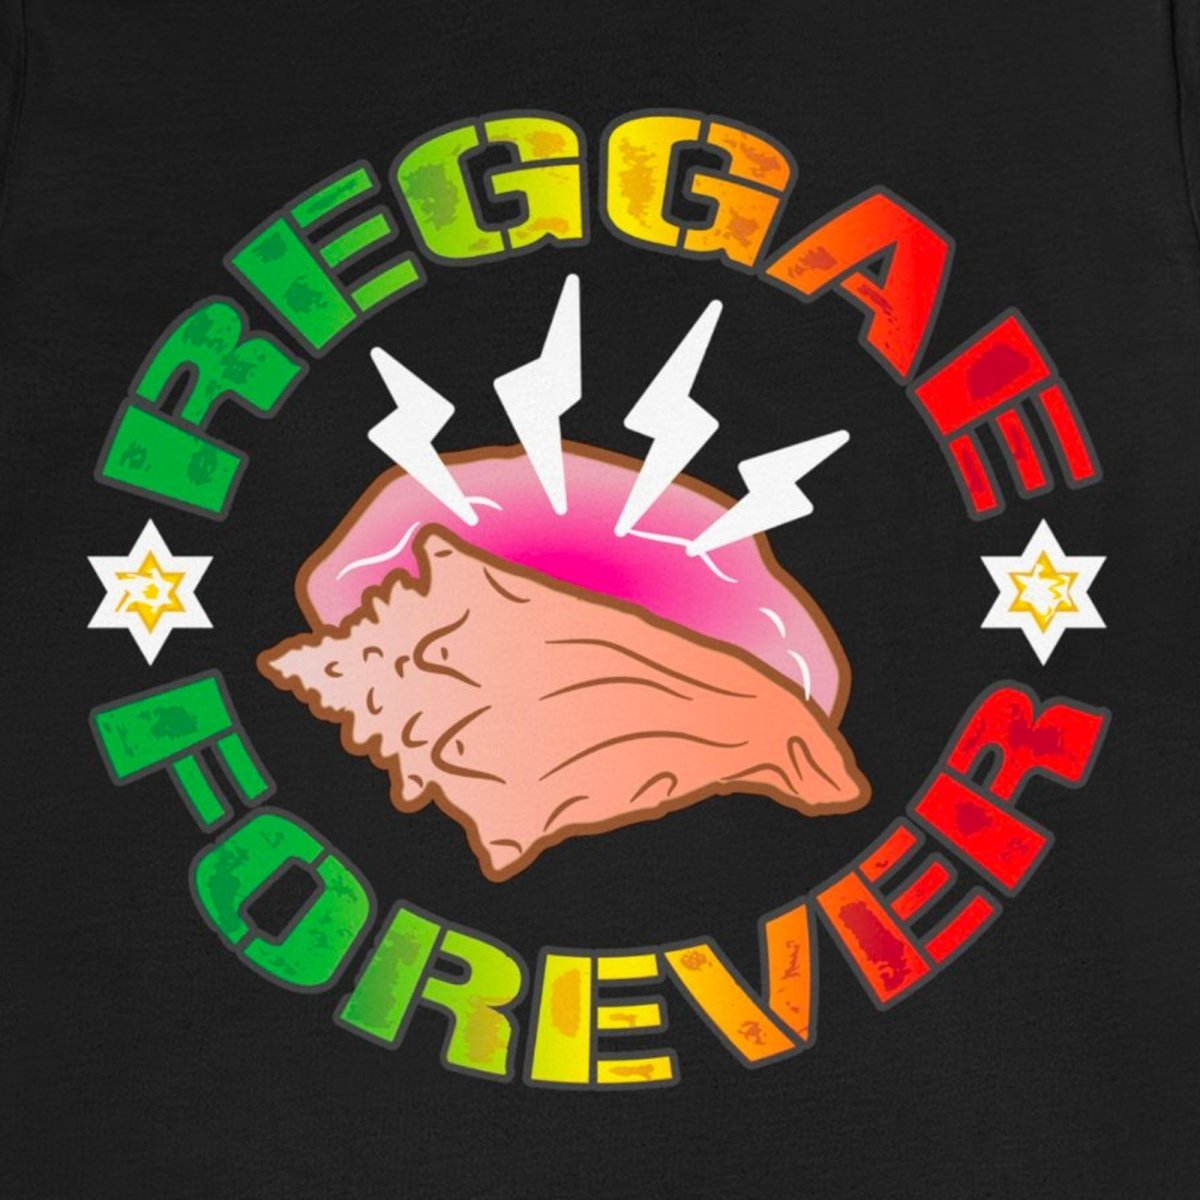 Reggae Forever Premium T-Shirt, Seashell, Ocean Sounds, Caribbean, Relax, Good Vibes, Jamaica